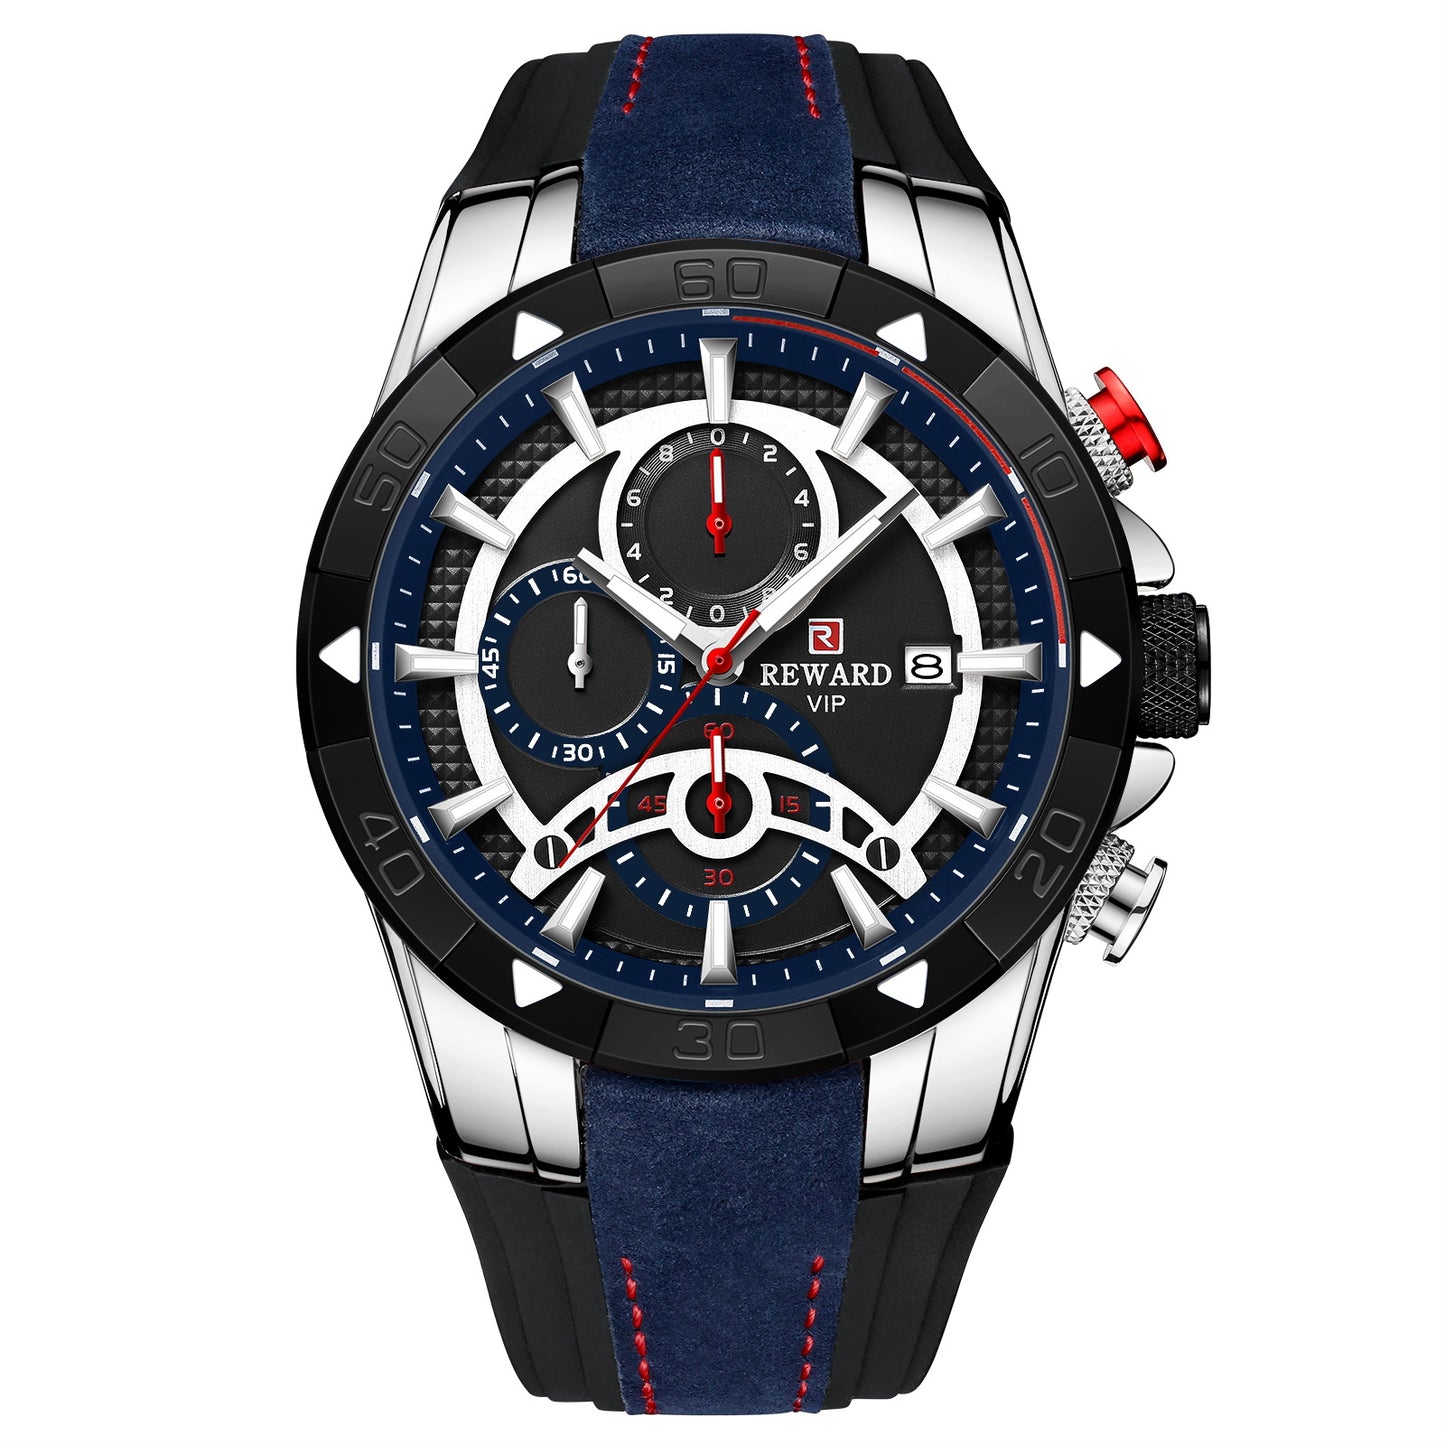 Men's Watch Calendar Watch Tape Quartz Watch Six-pin Watch Business Men's Watch